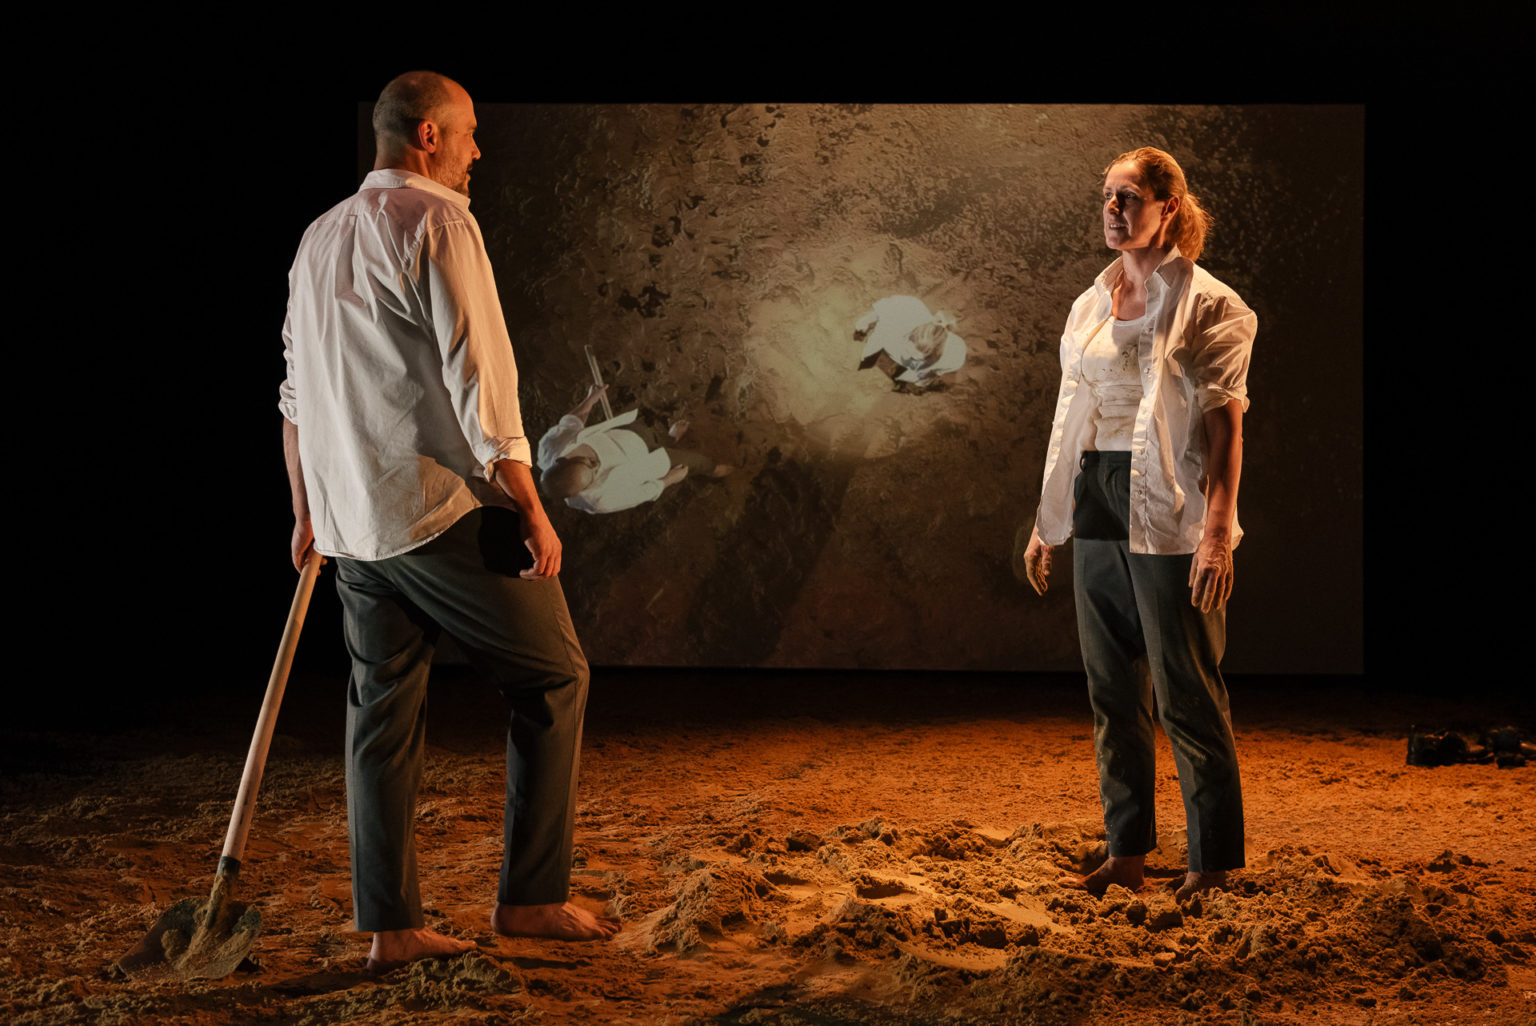 Rachid Benbouchta et Geneviève Damas se font face. Il tient une pelle en main. Derrière eux, un écran projette leur image. Du sable recouvre le plateau.